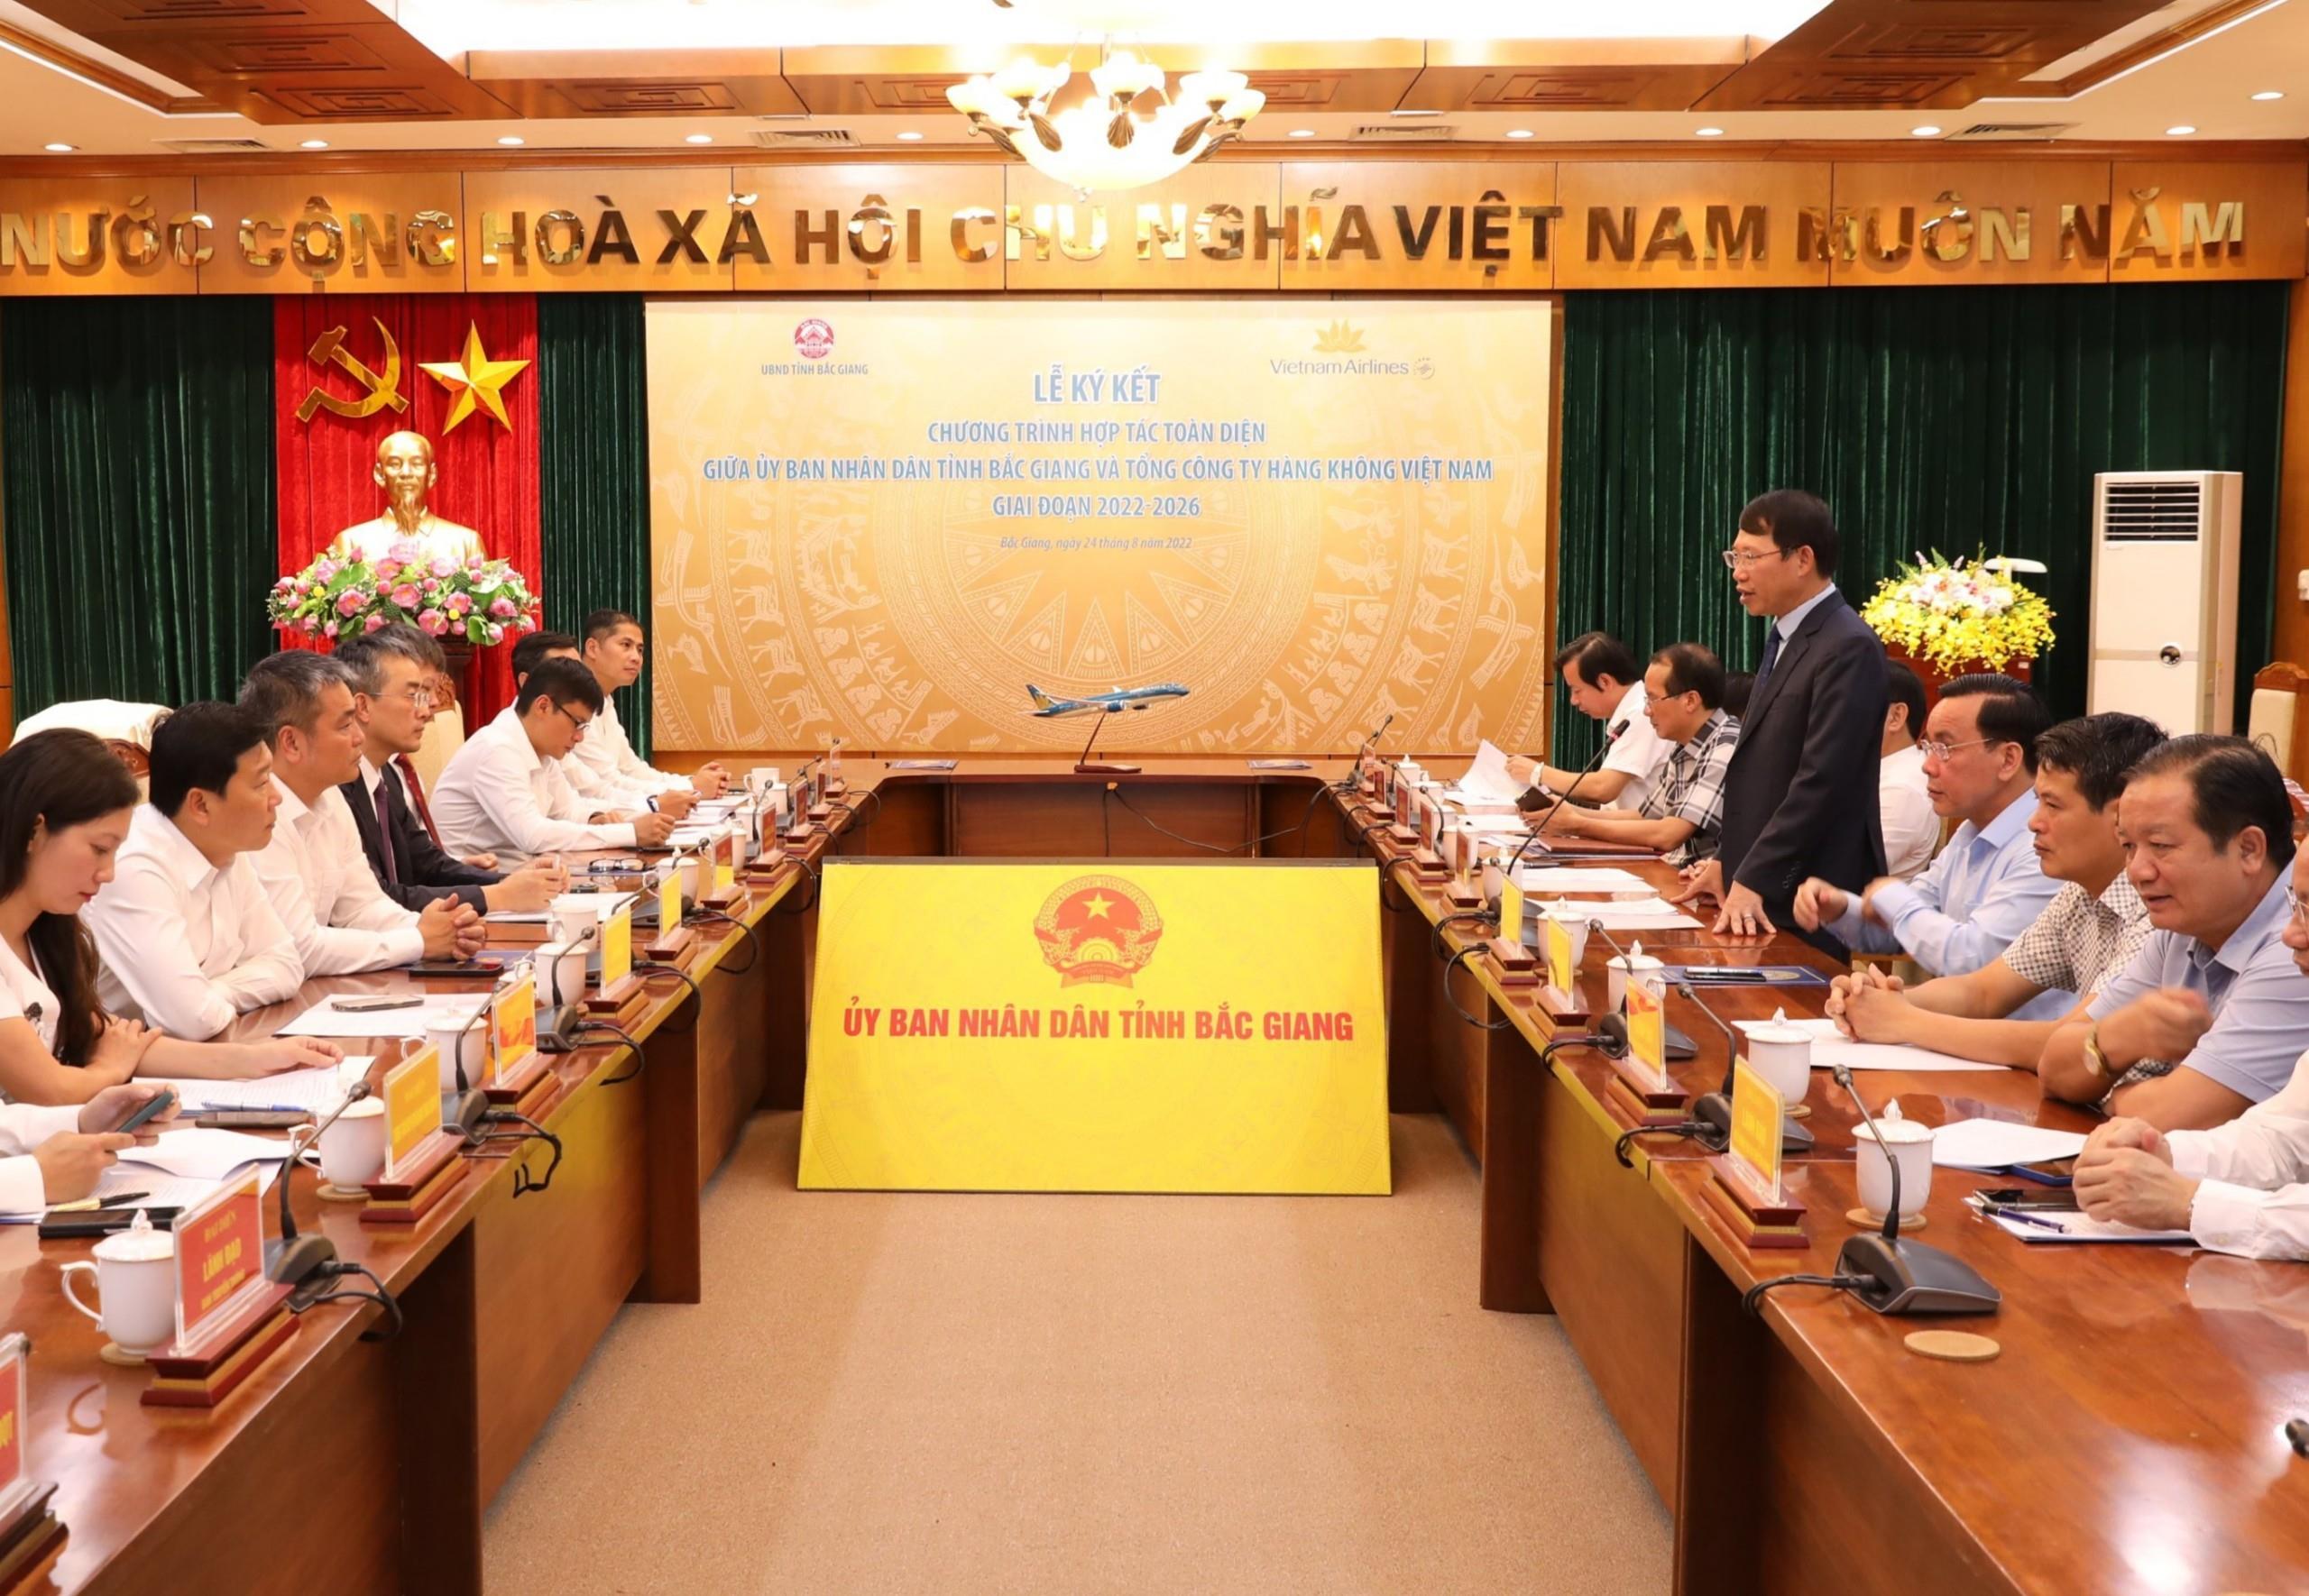 Ký kết Chương trình hợp tác toàn diện giai đoạn 2022 – 2026 giữa tỉnh Bắc Giang và Vietnam Airlines